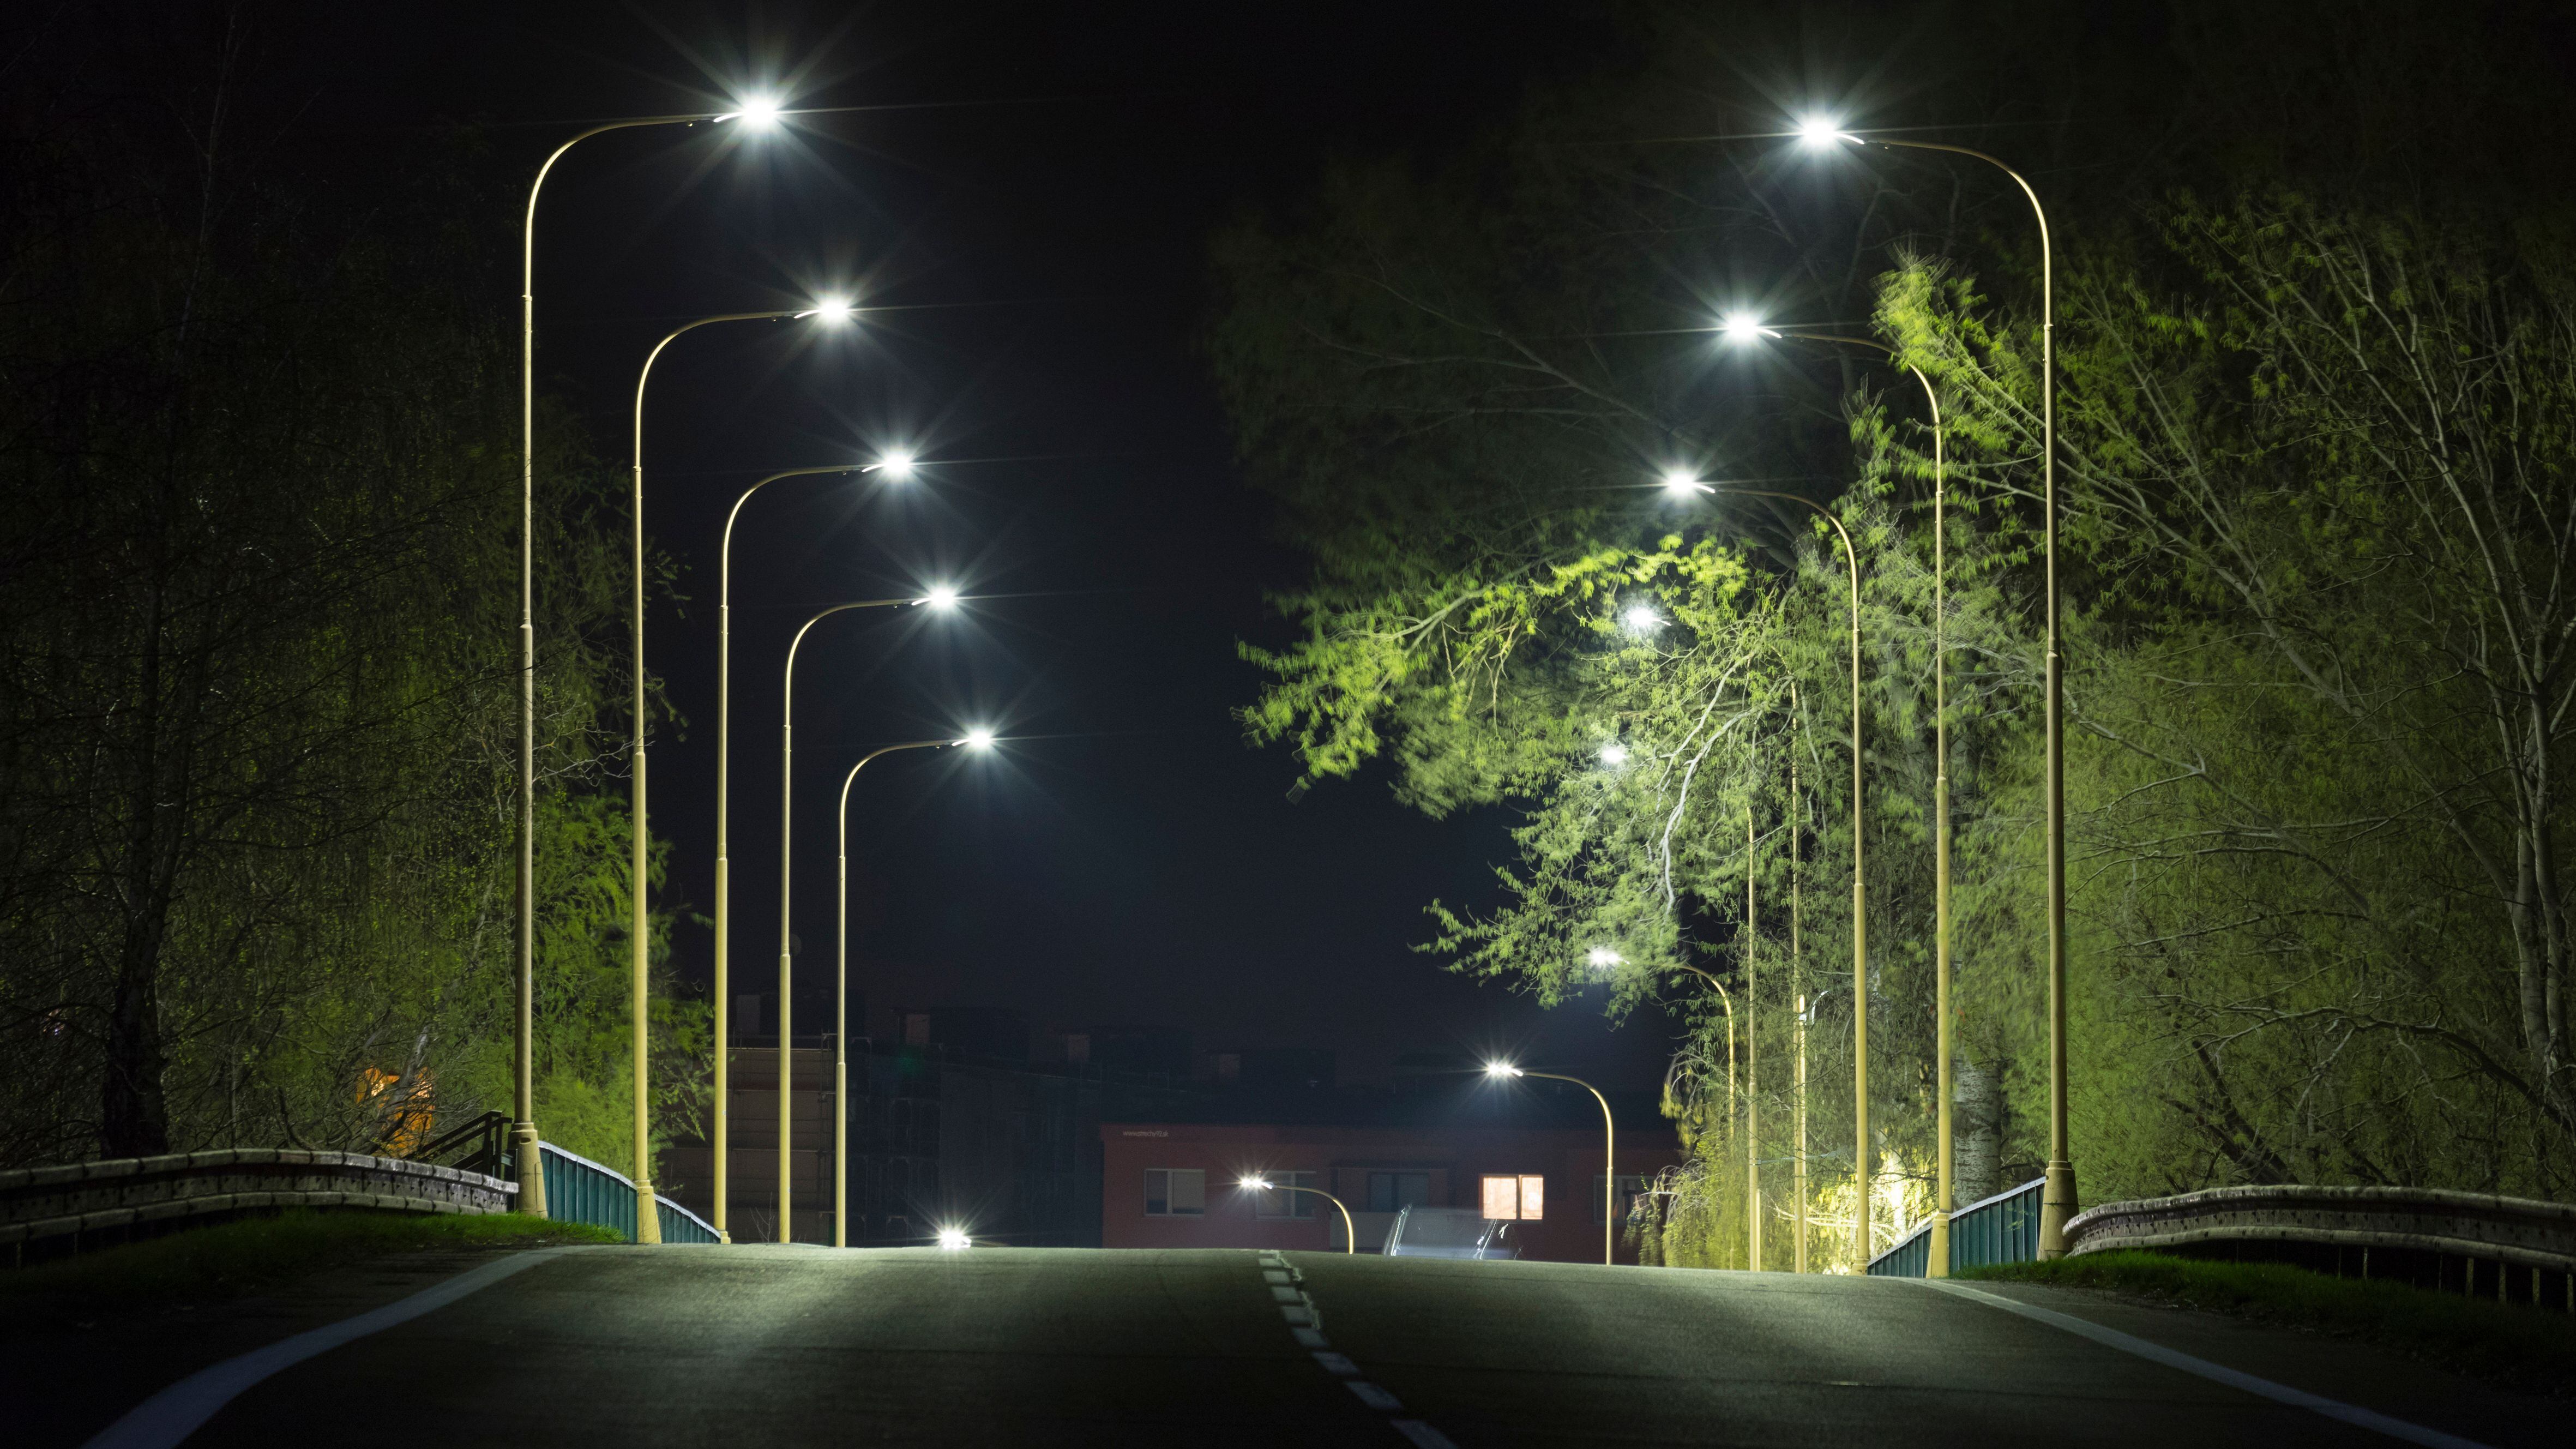 Una carretera iluminada por farolas en la noche (Shutterstock)